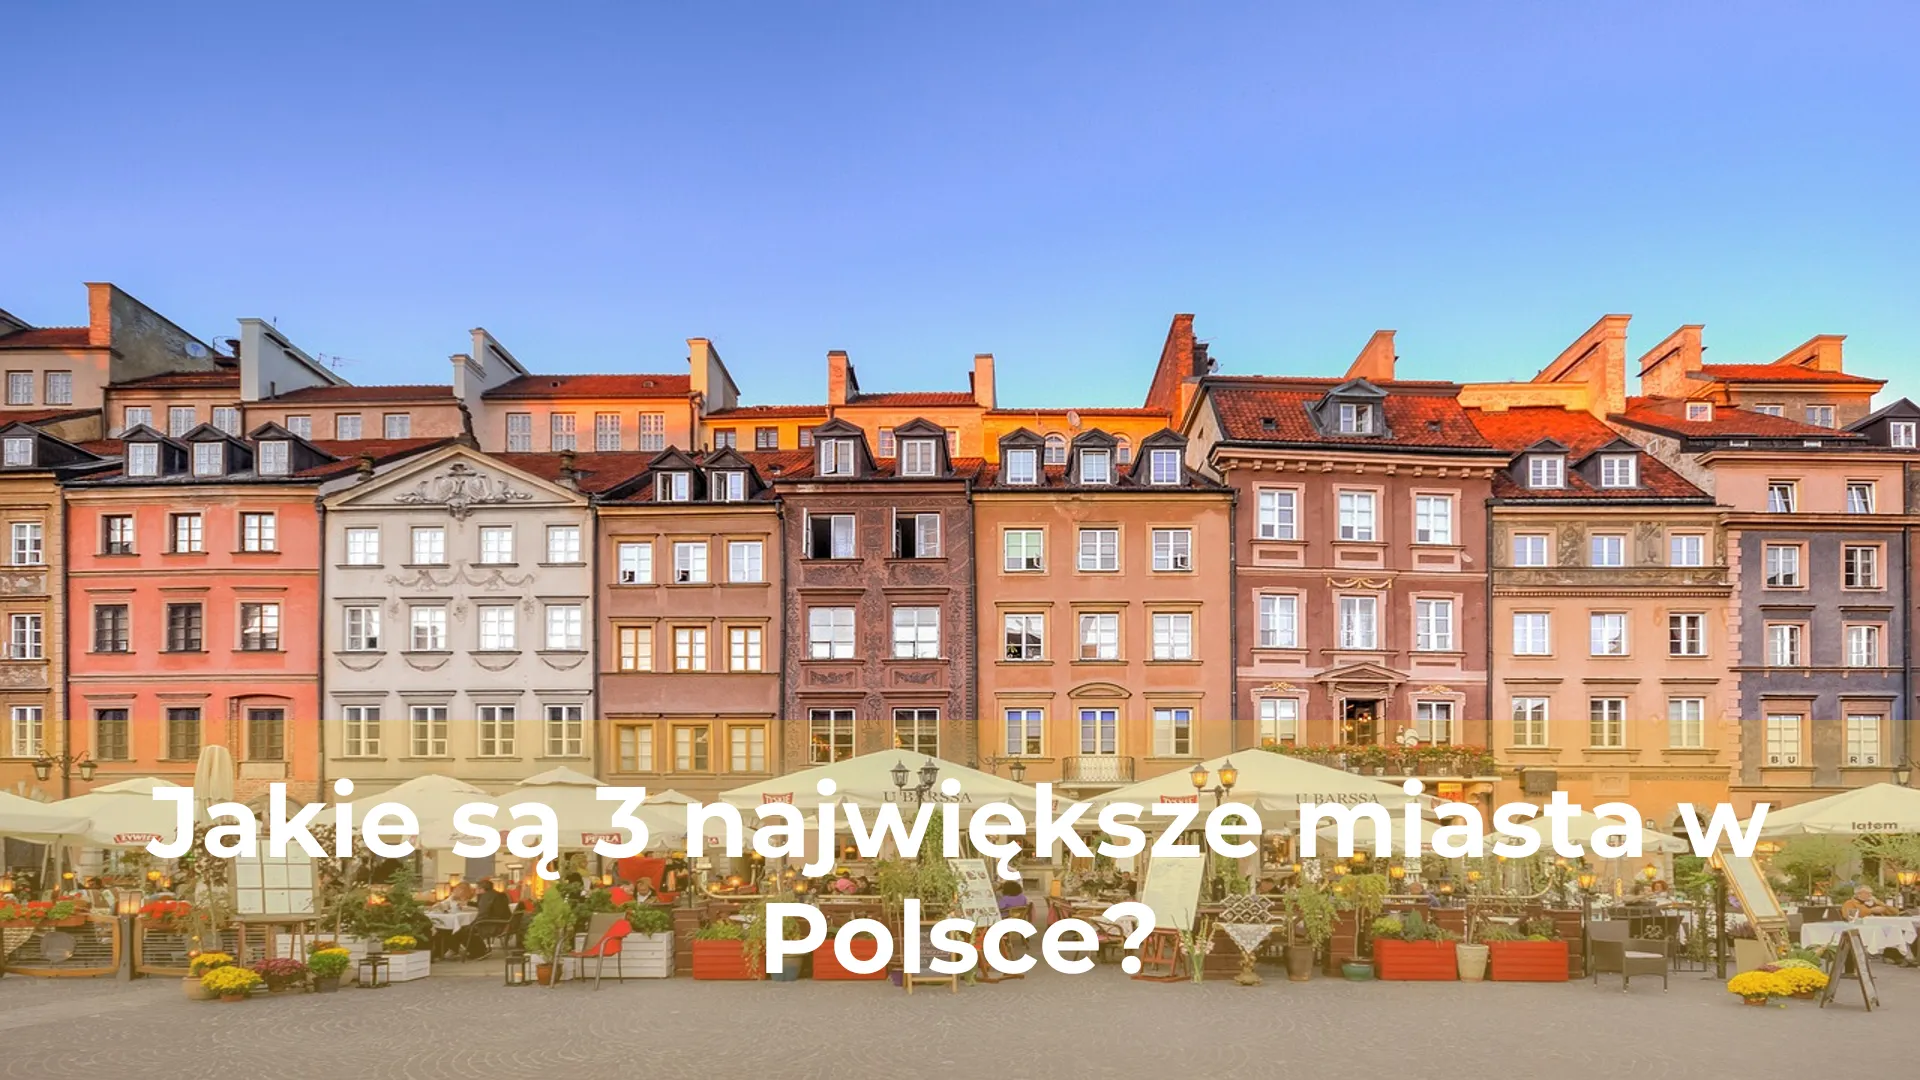 Jakie są 3 największe miasta w polsce